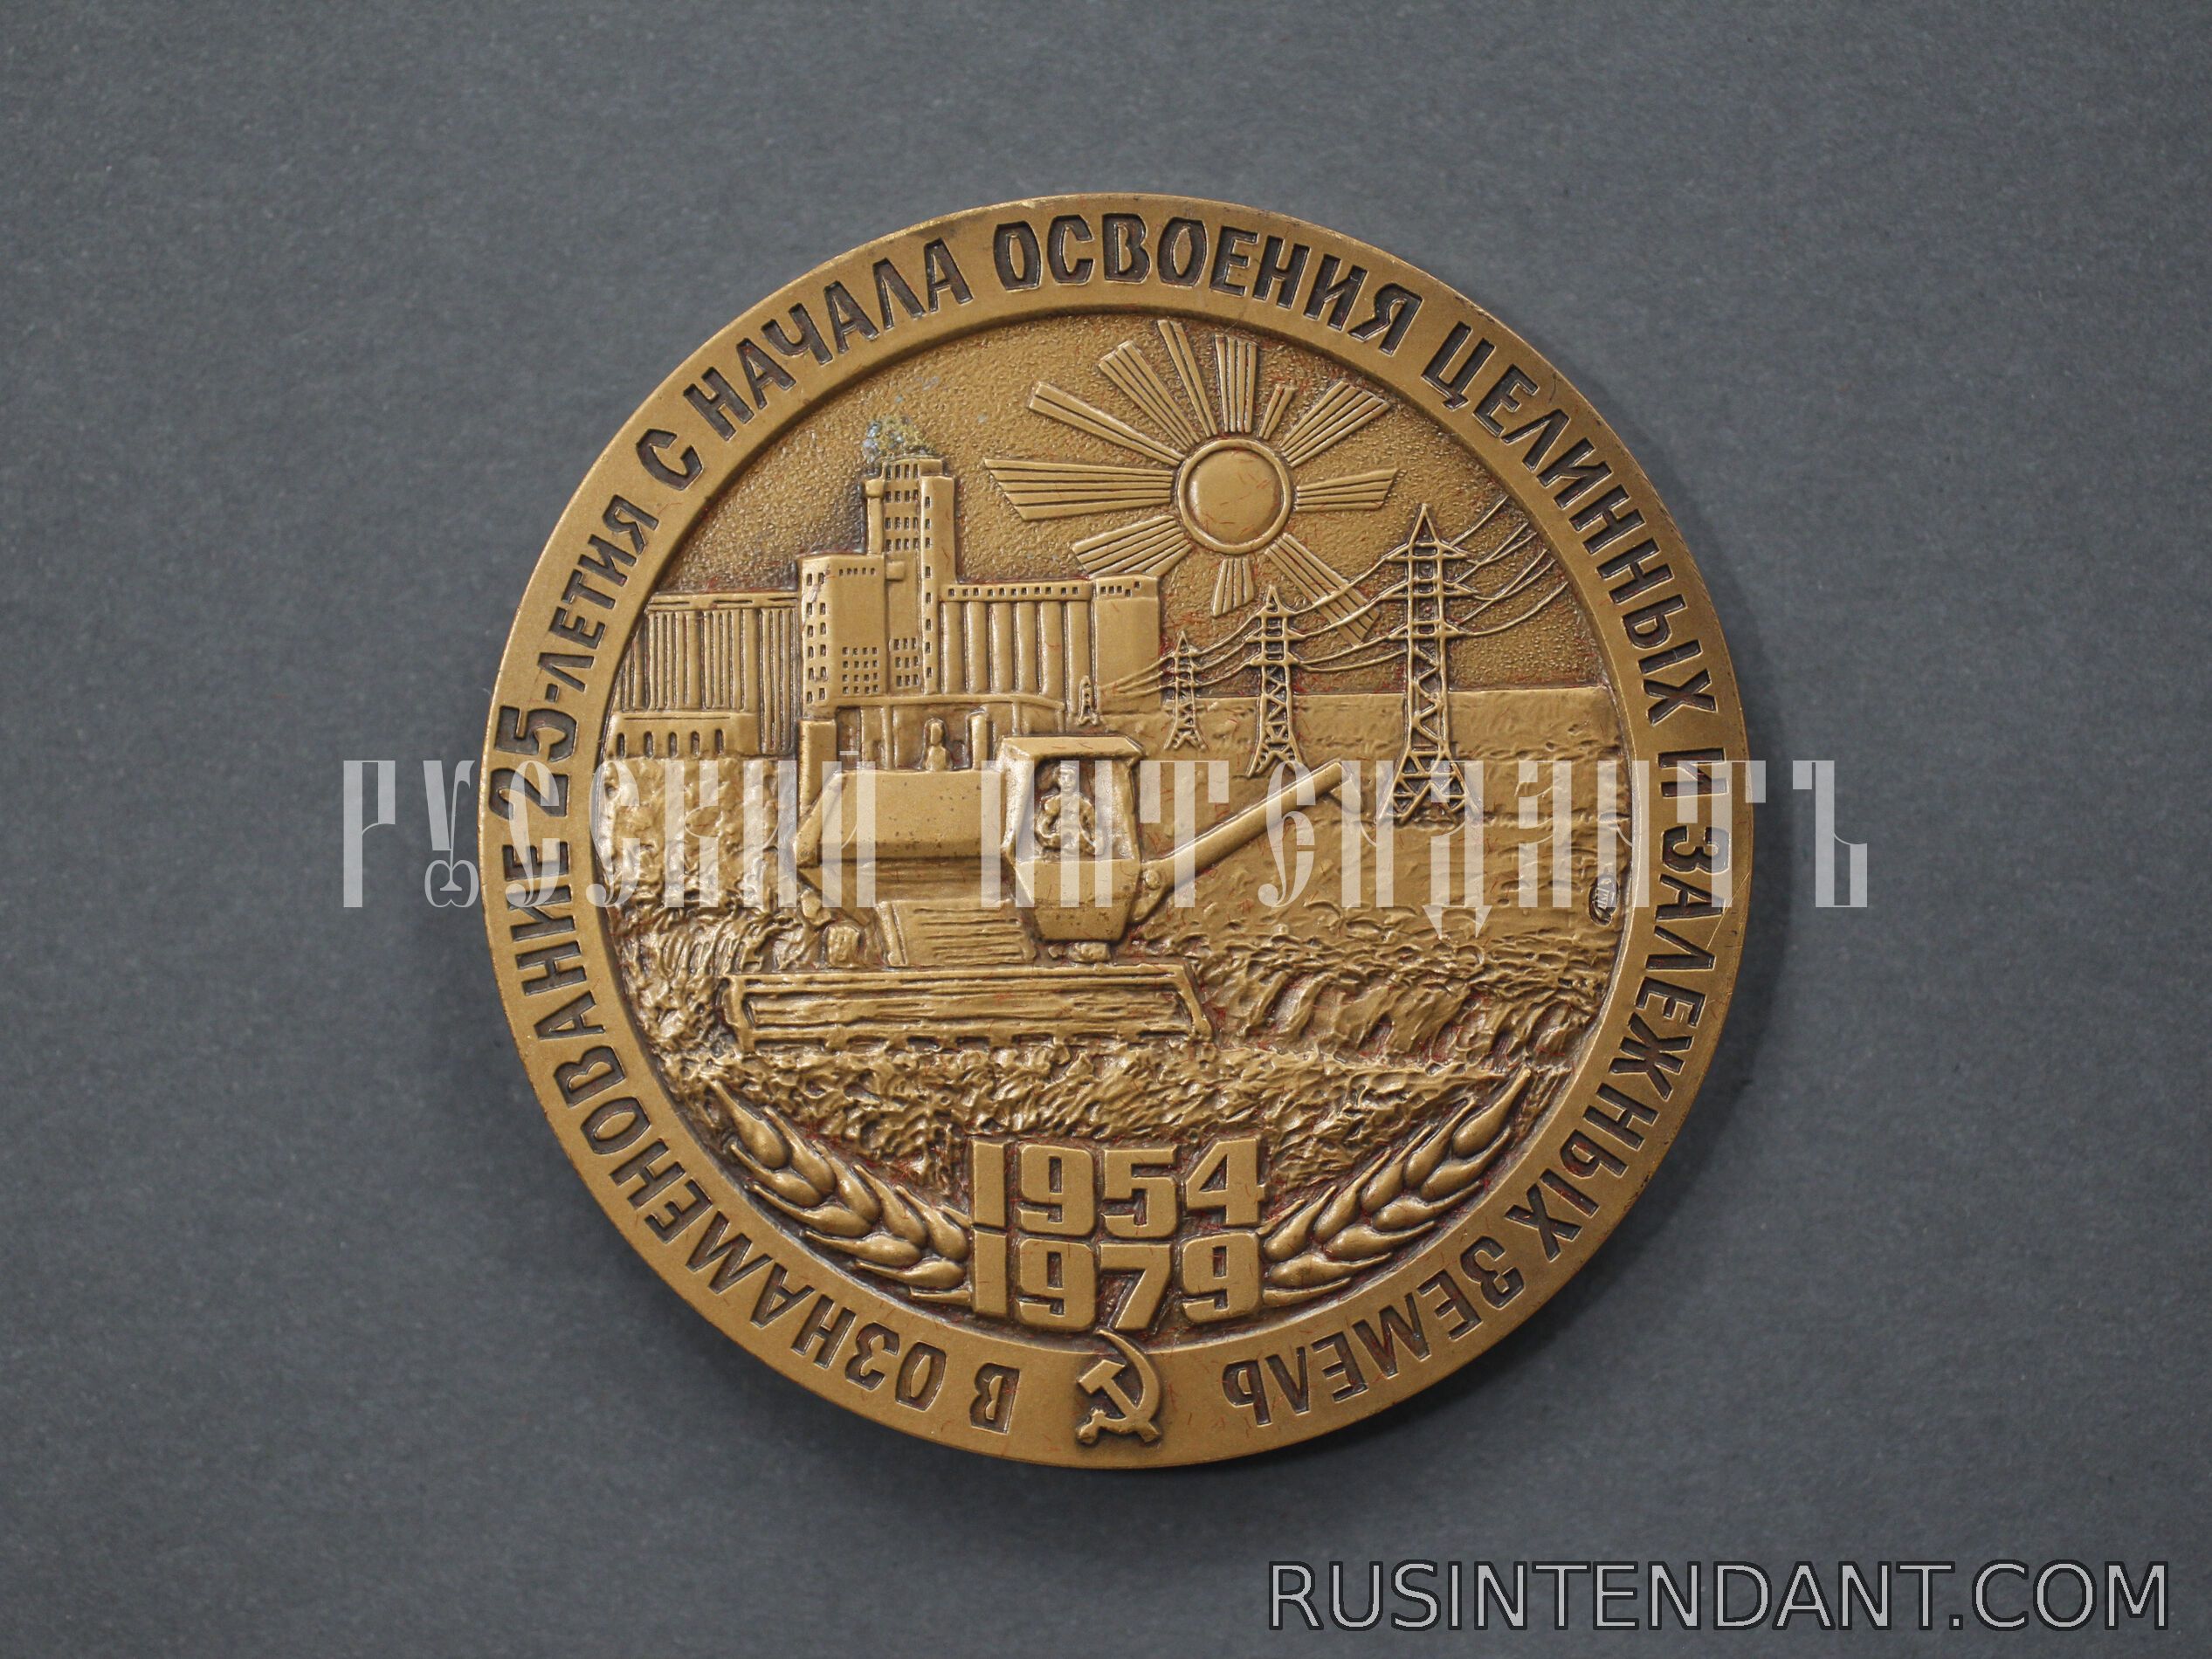 Фото 4: Настольная медаль «В ознаменование 25-летия освоения целинных и залежных земель» 